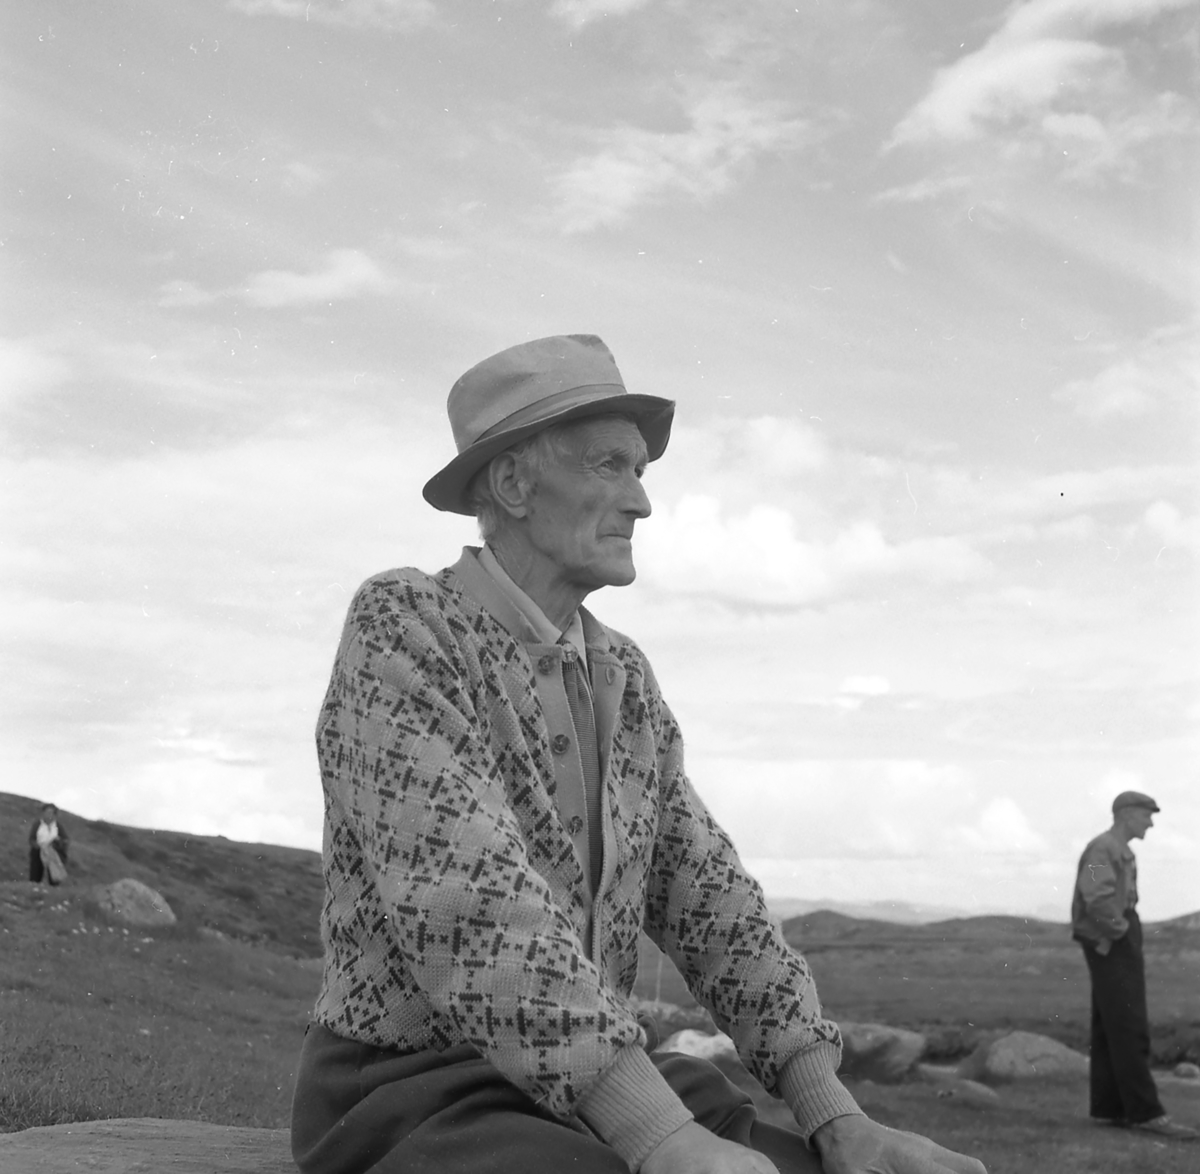 Fra hesteslepp på Bekkelegeret i Folldalsfjellene,Oppdal 1960